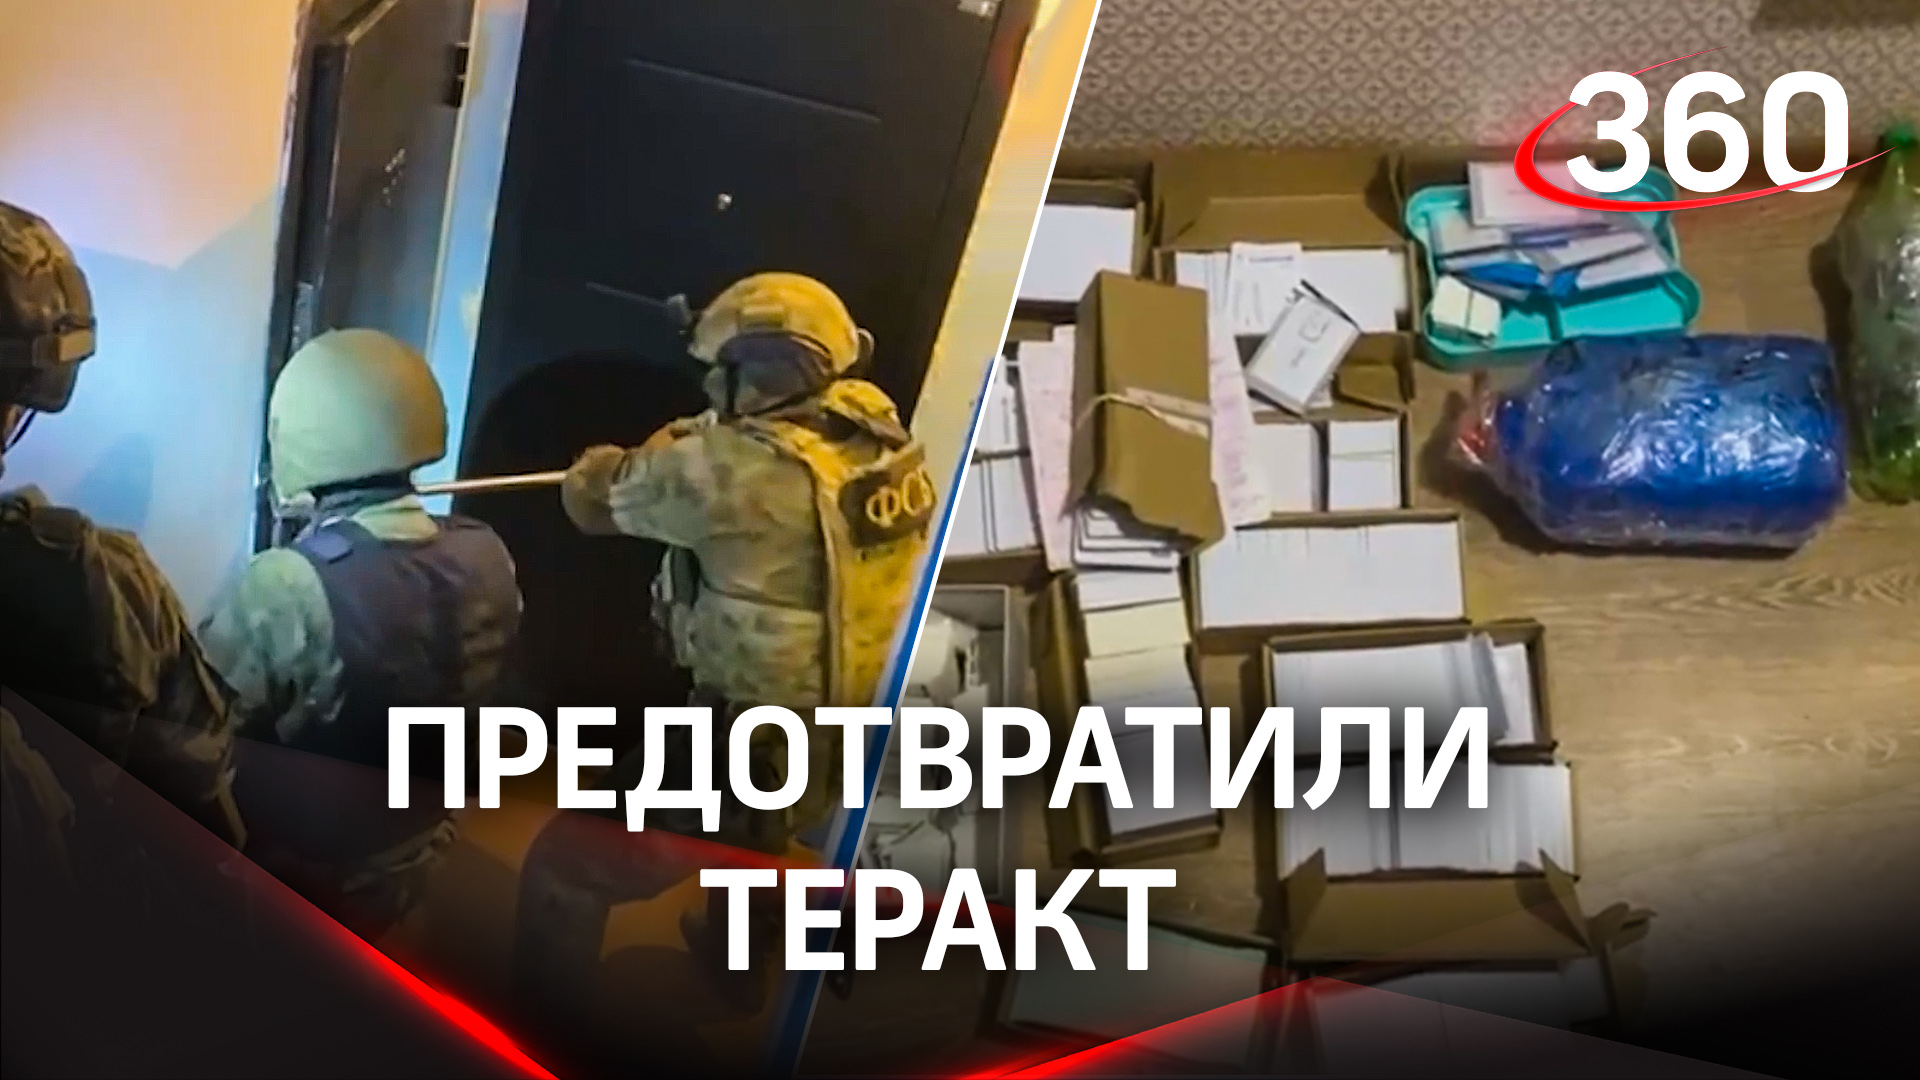 ФСБ задержала 4 боевиков, которые готовили взрыв на военном объекте в Калужской области: видео